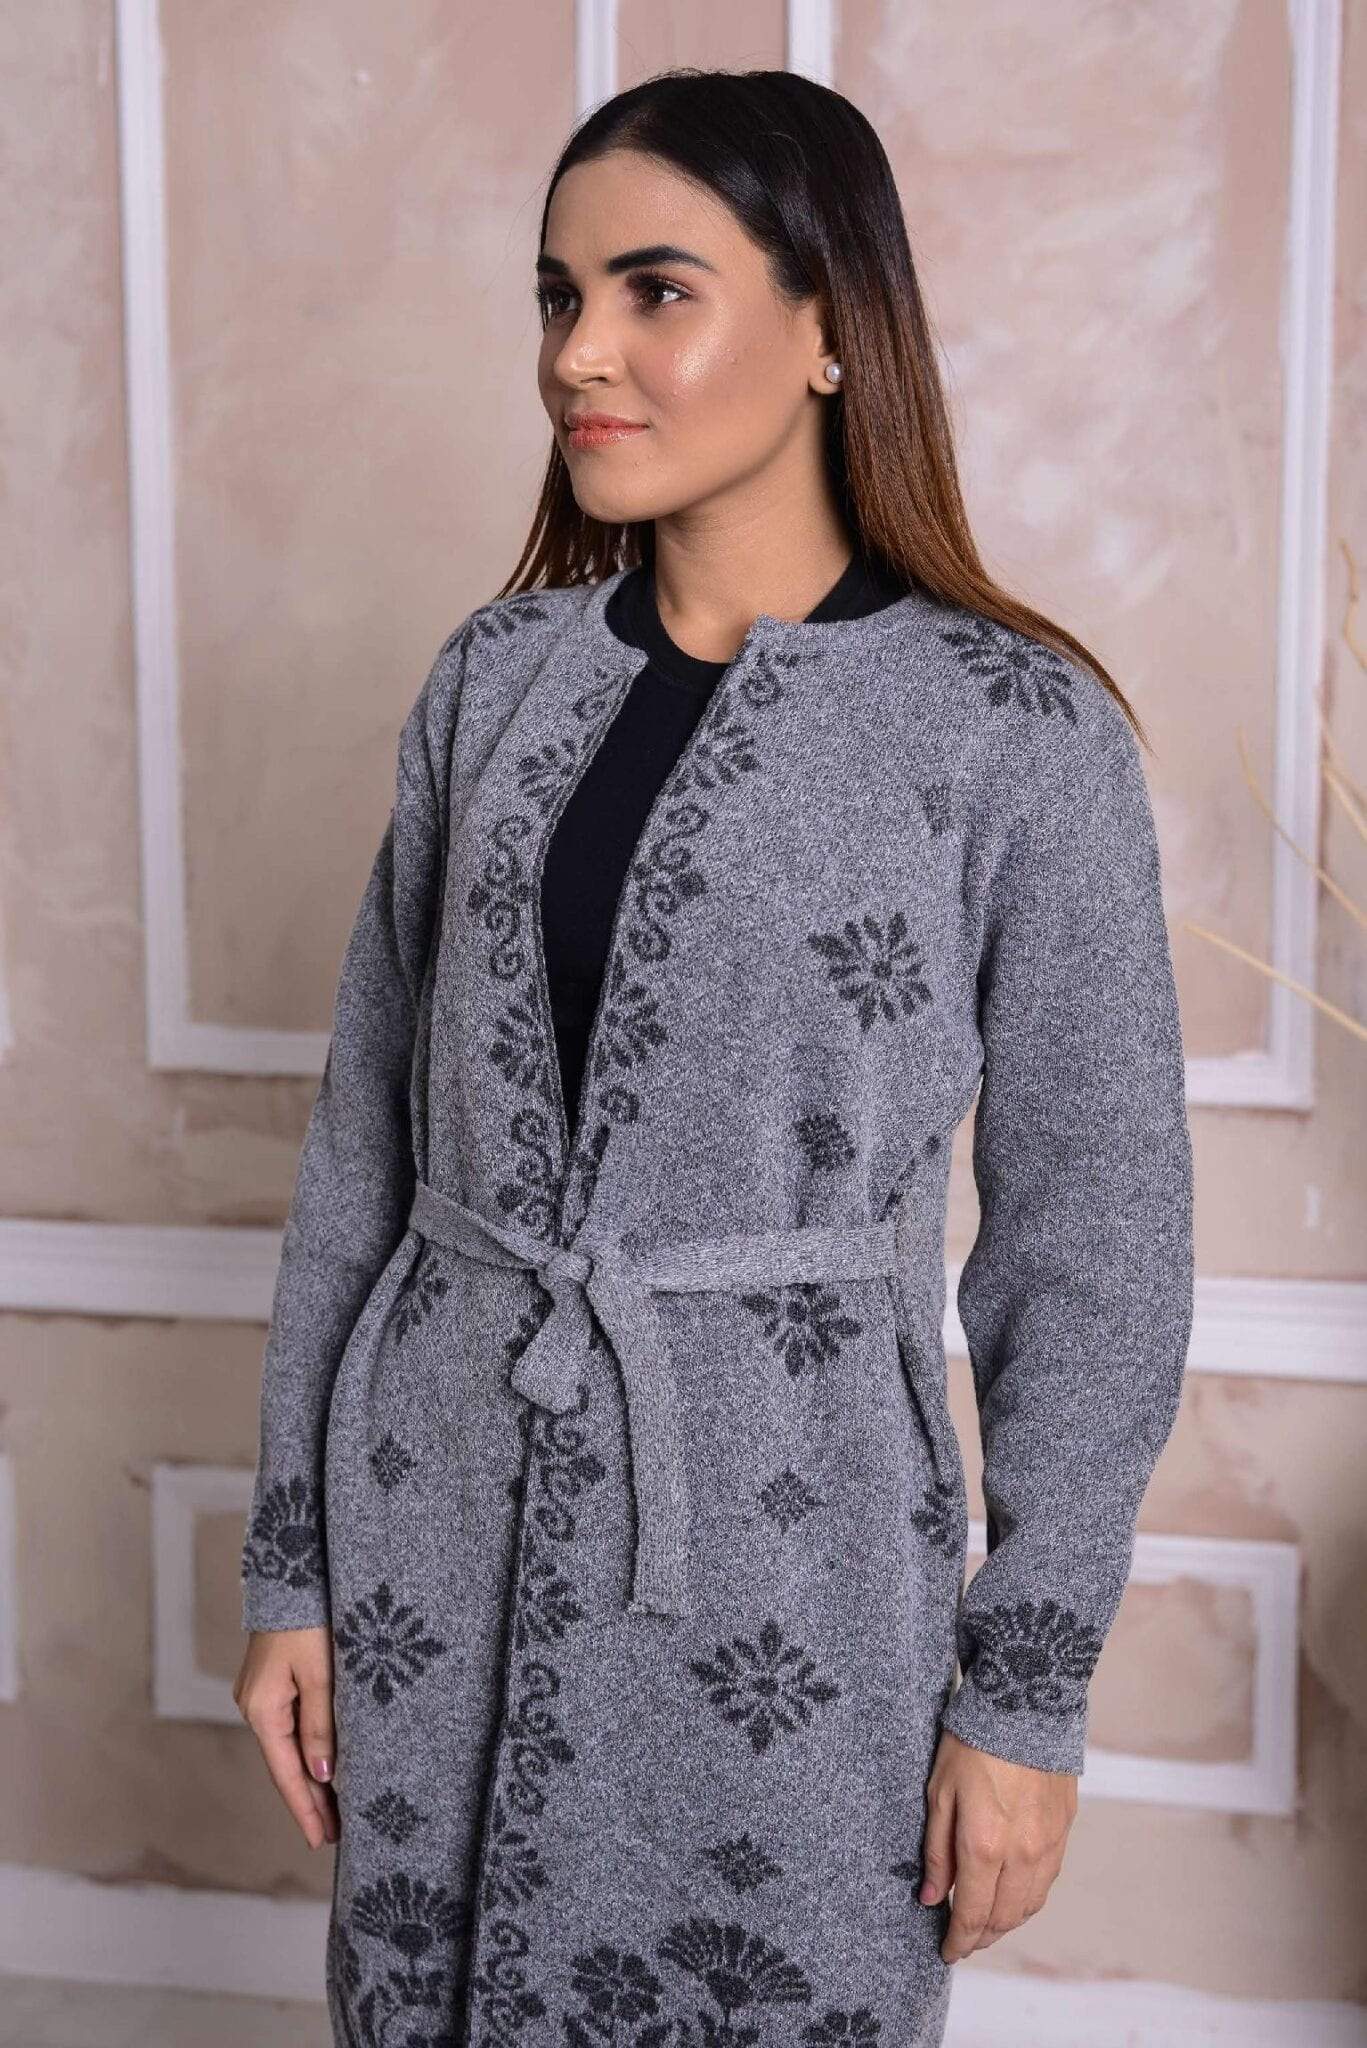 Ladies Winter Woolen Coat – 48 In Pakistan